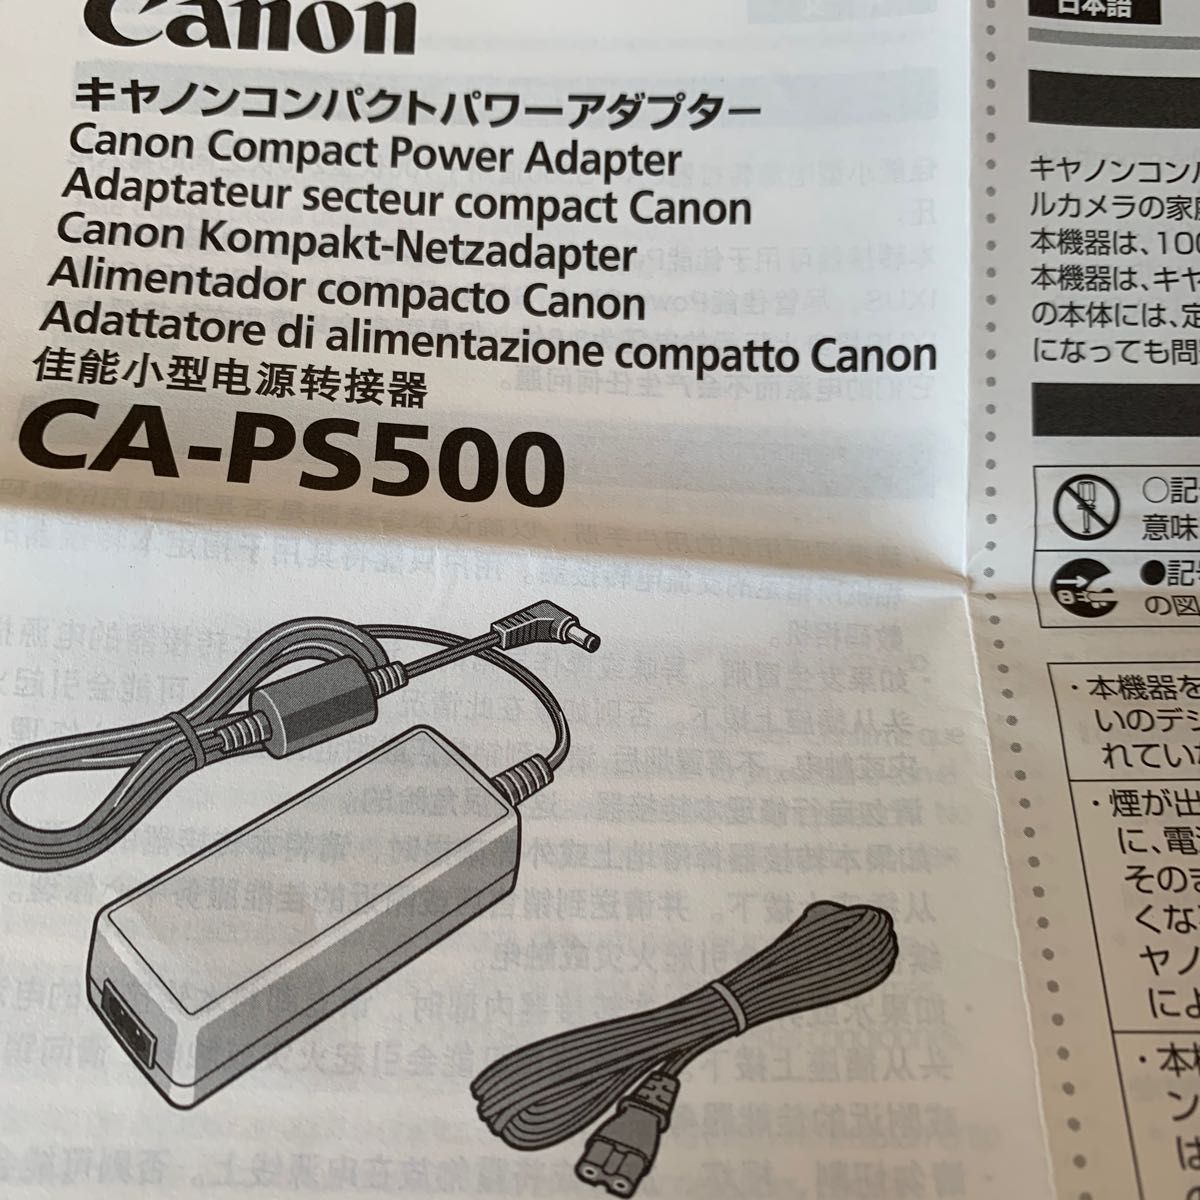 キヤノンコンパクトパワーアダプターCA-PS500